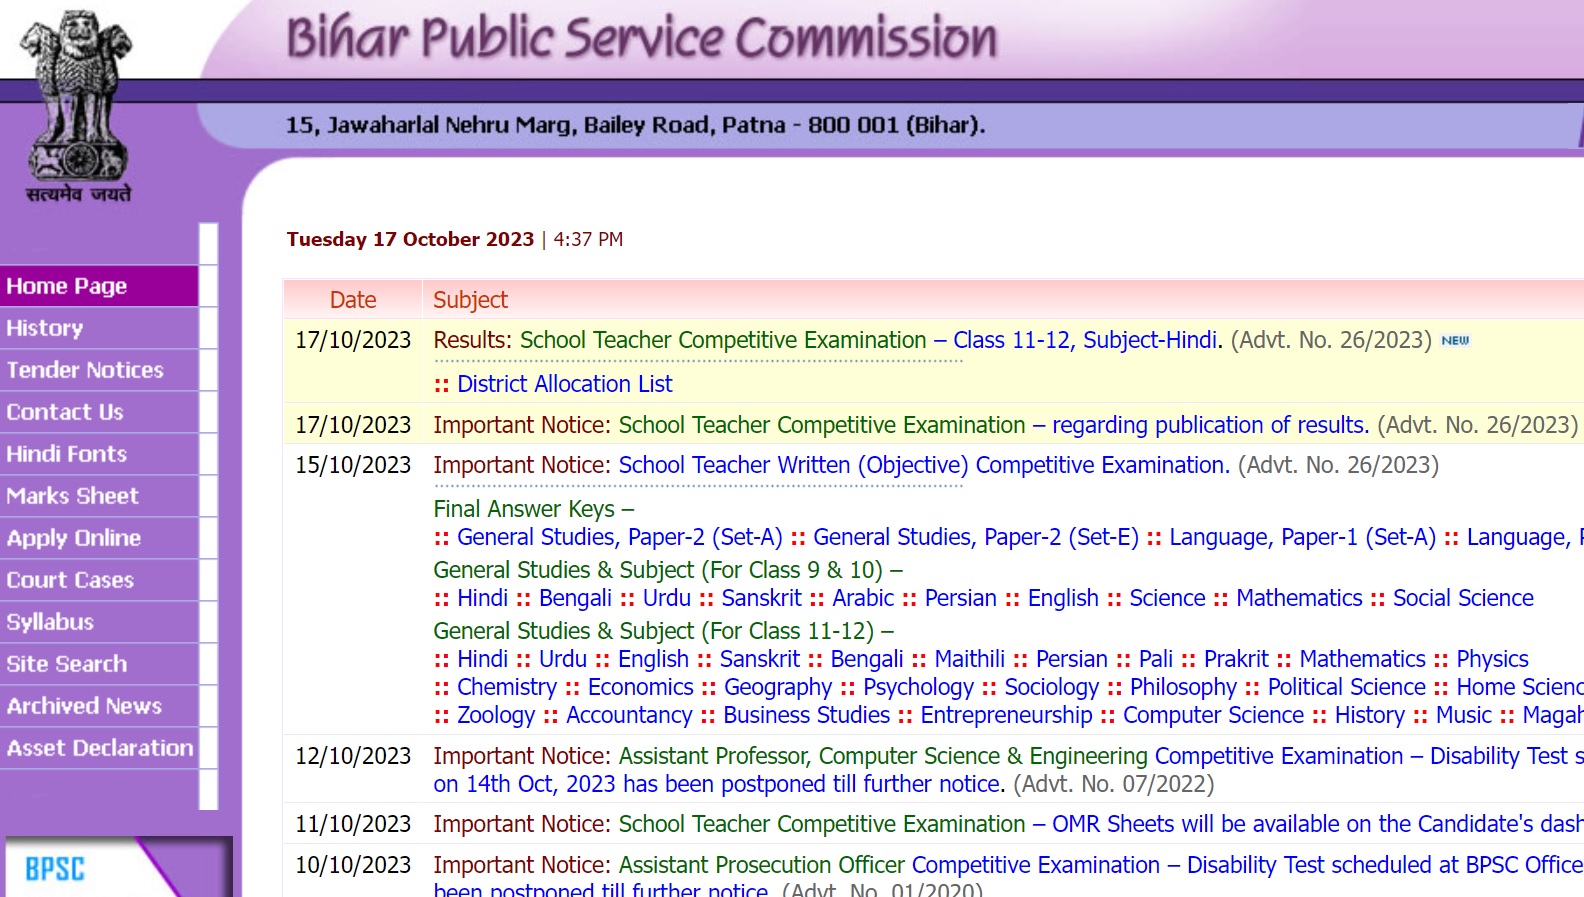 BPSC Bihar Teacher Result 2023